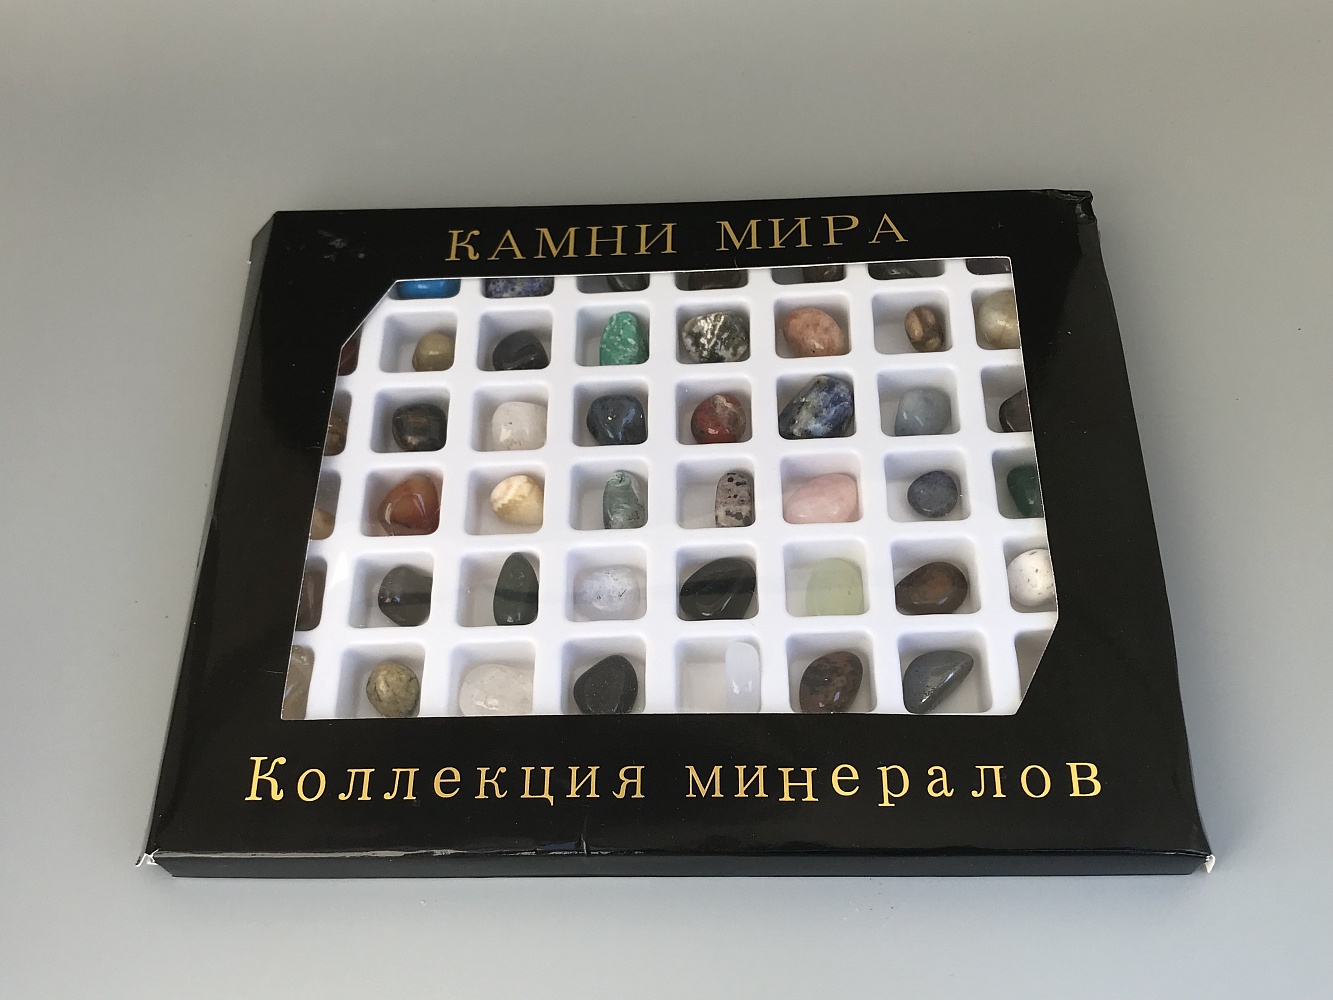 Коллекция минералов "Камни мира" 56 минералов KM-0001, фото 4